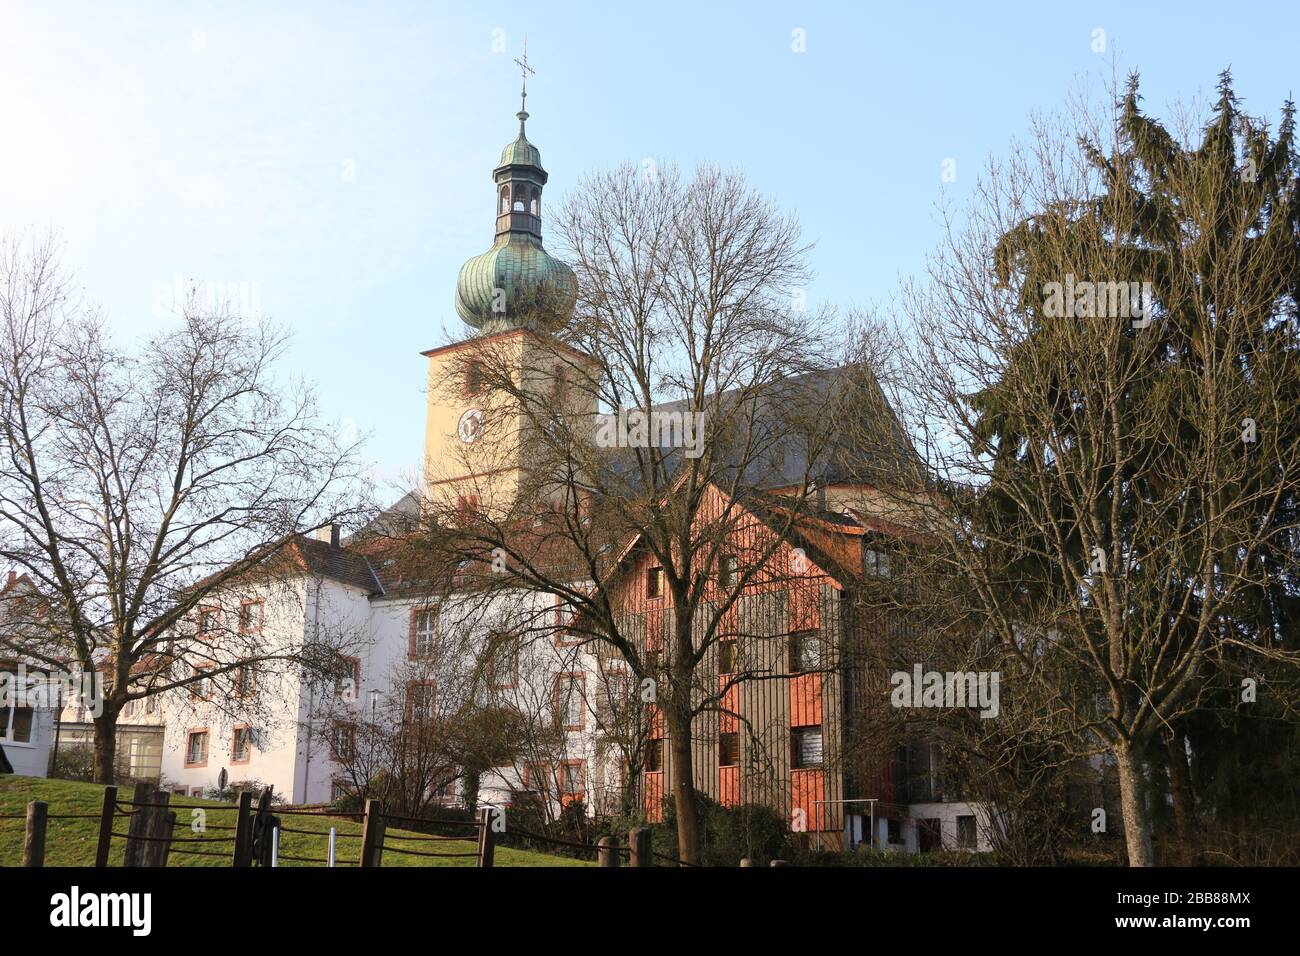 Blick auf die Altstadt der Gemeinde Illingen im Saarland Stock Photo